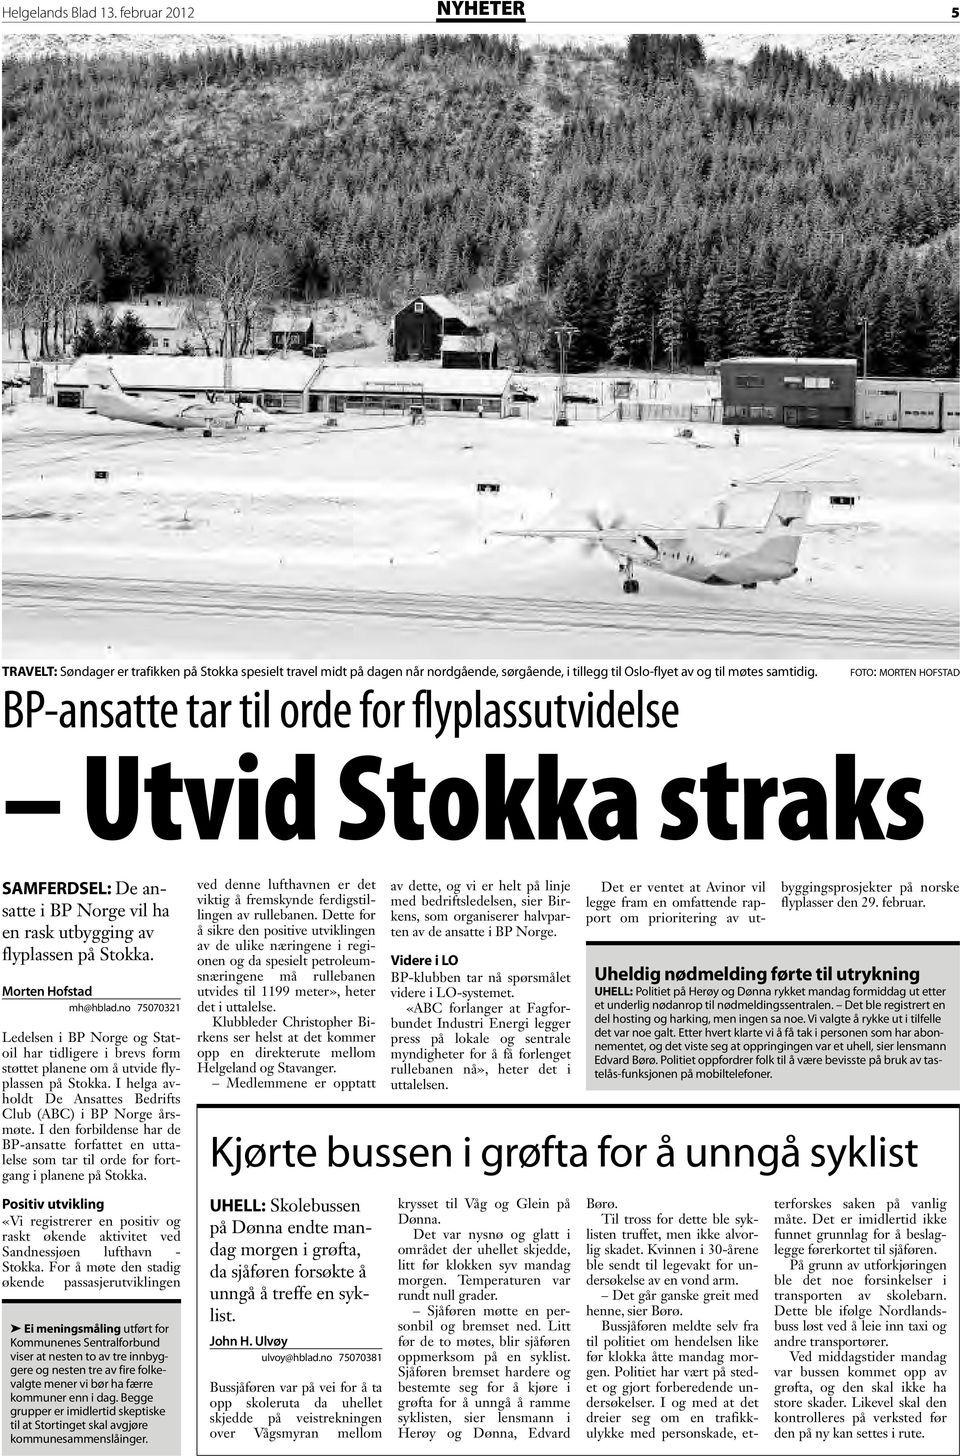 no 75070321 Ledelsen i BP Norge og Statoil har tidligere i brevs form støttet planene om å utvide flyplassen på Stokka. I helga avholdt De Ansattes Bedrifts Club (ABC) i BP Norge årsmøte.